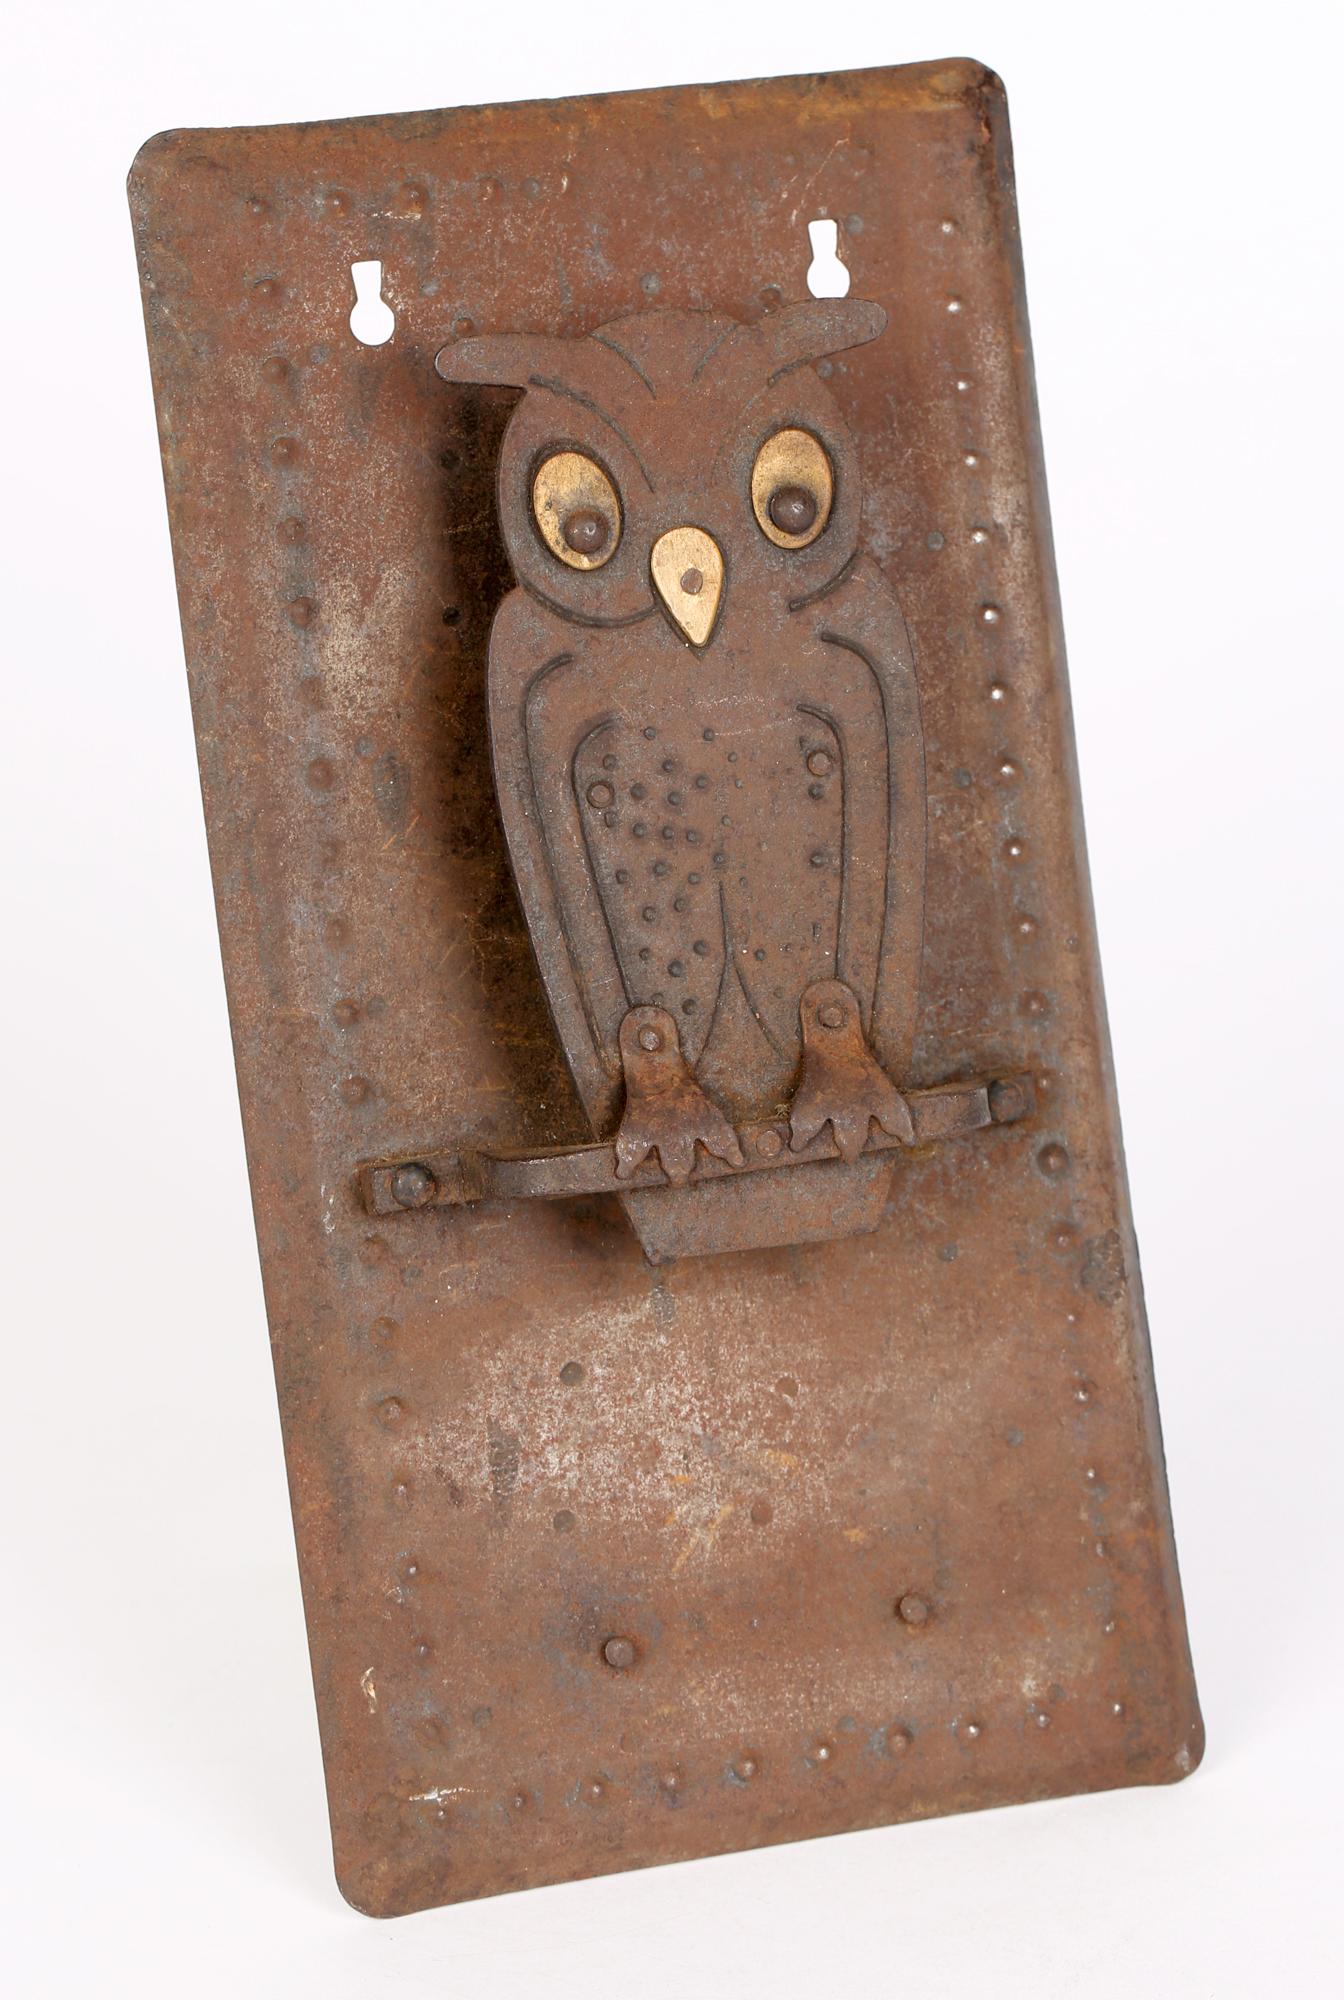 Wrought Iron Hugo Berger Goberg German Jugendstil Owl Wall Hanging Match Box Holder For Sale